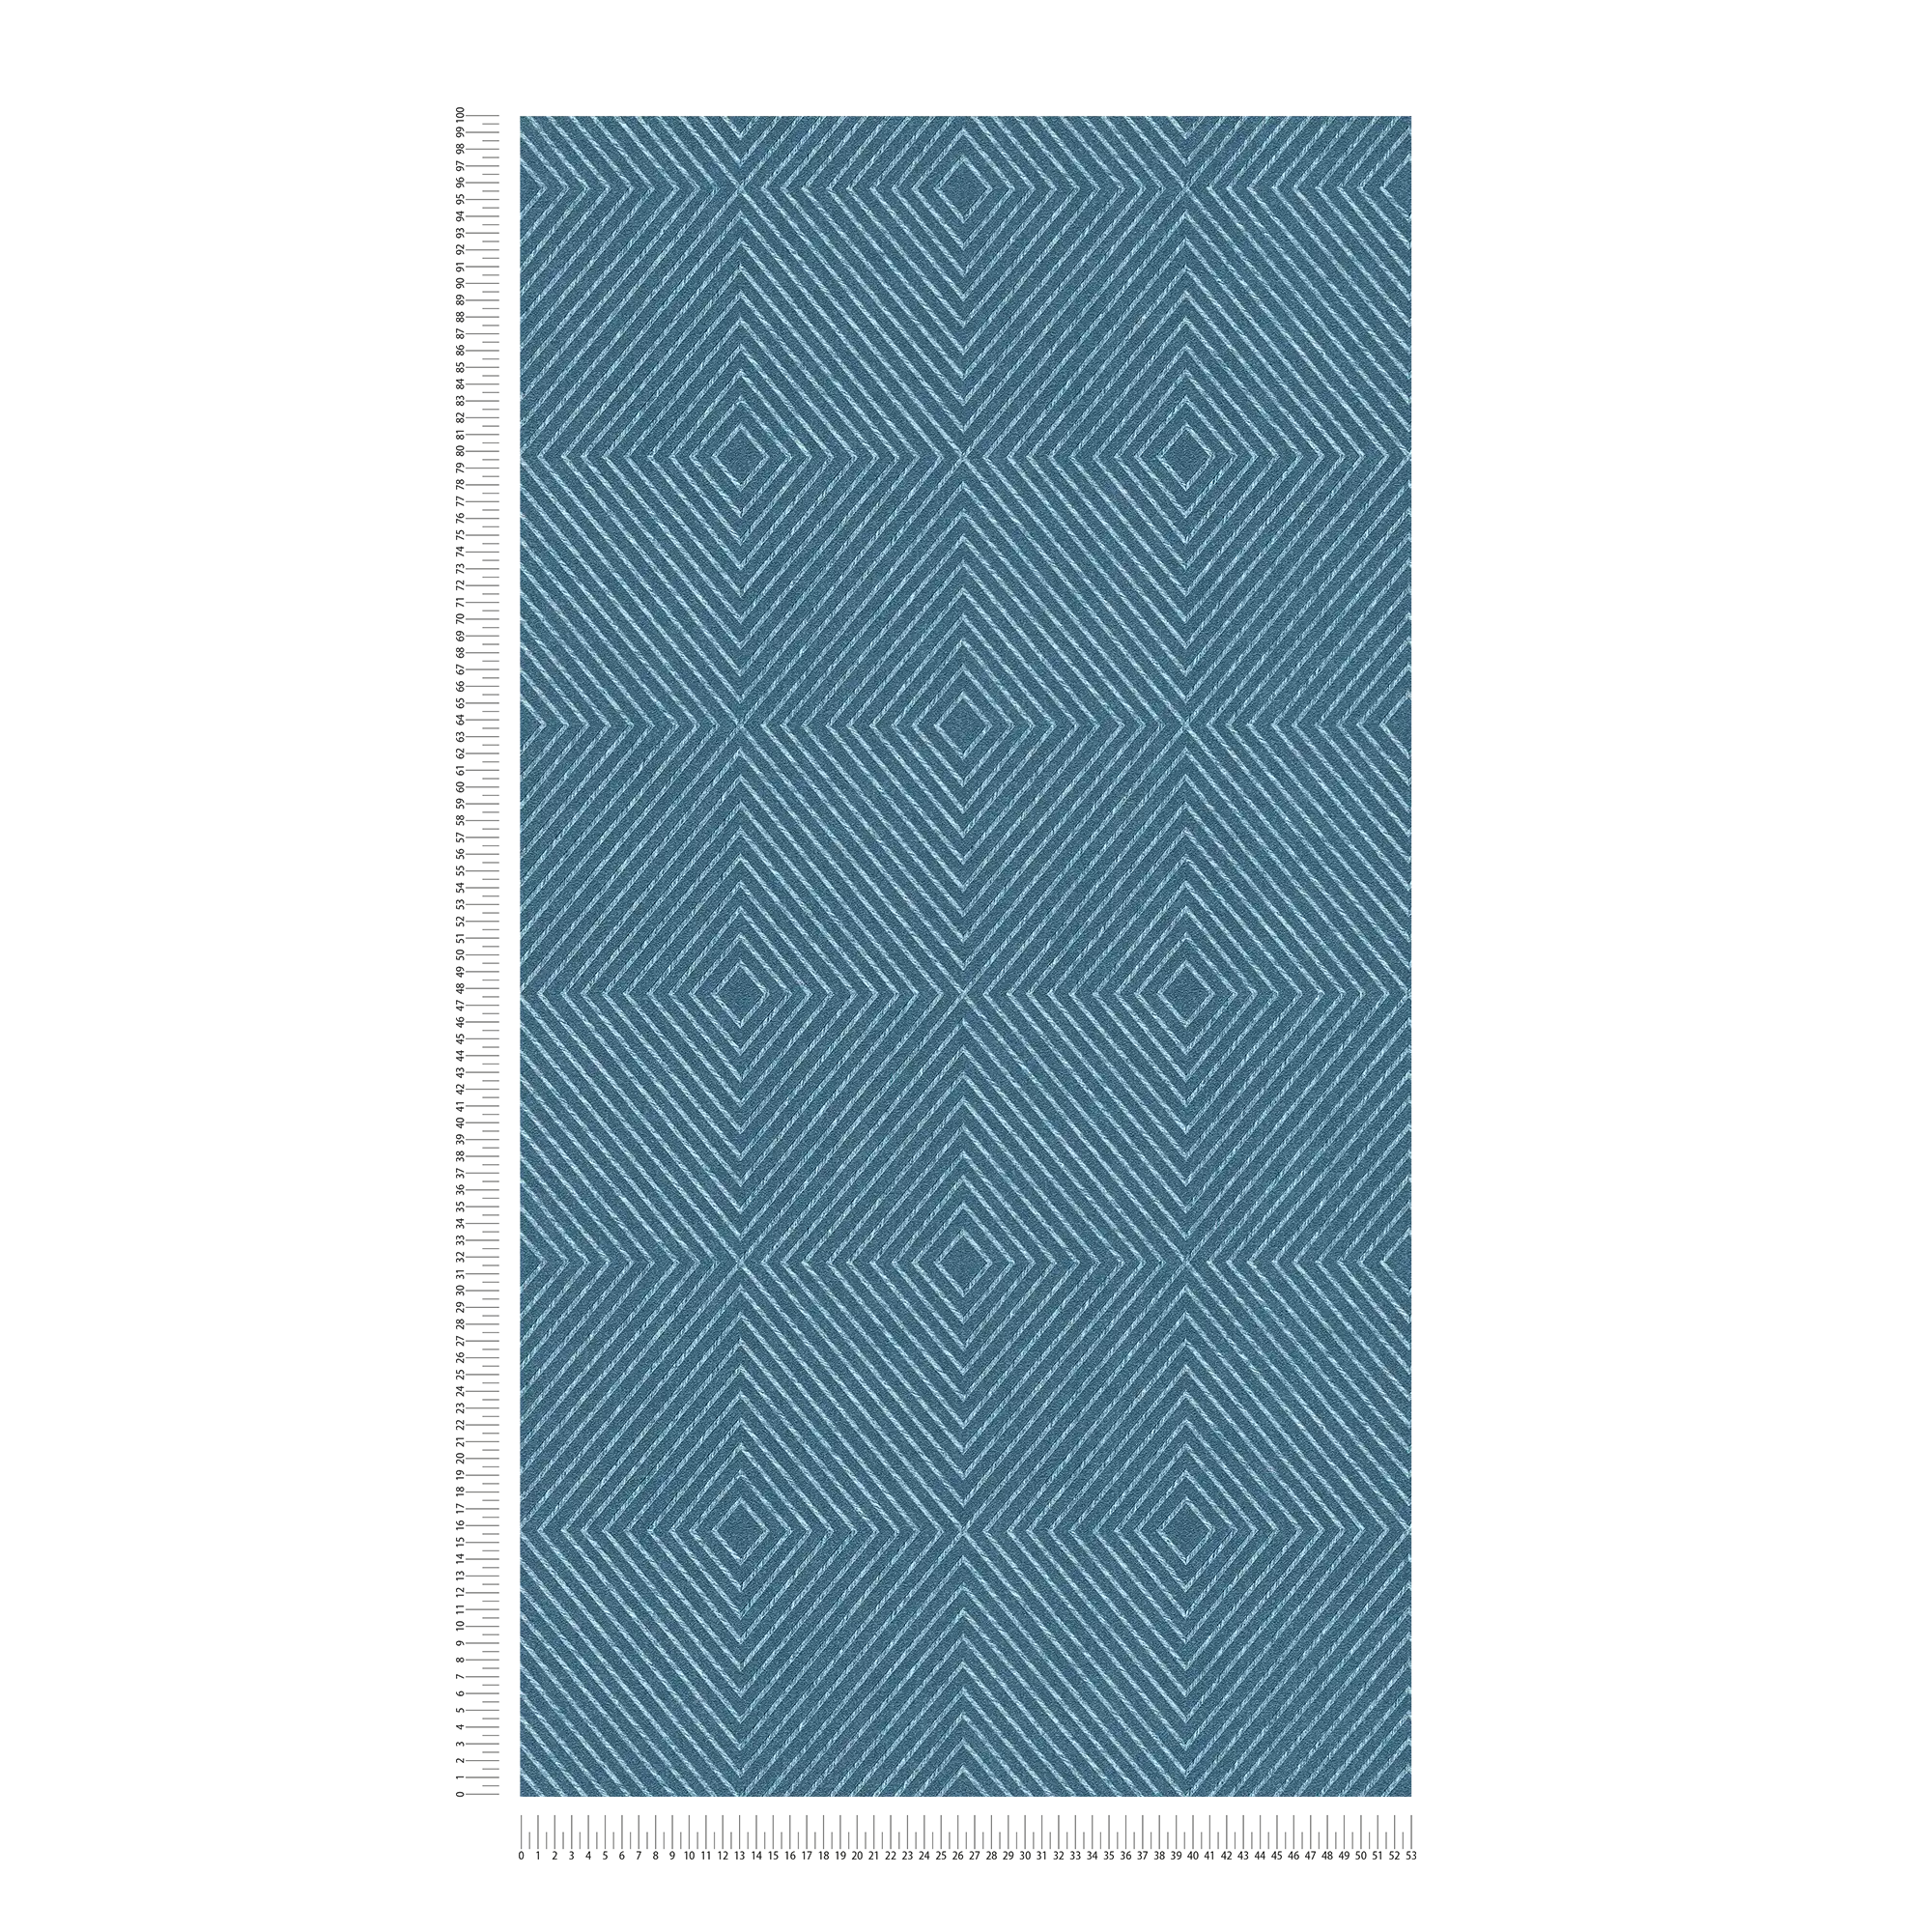             Behang grafisch ontwerp, Scandinavische stijl - blauw, zilver
        